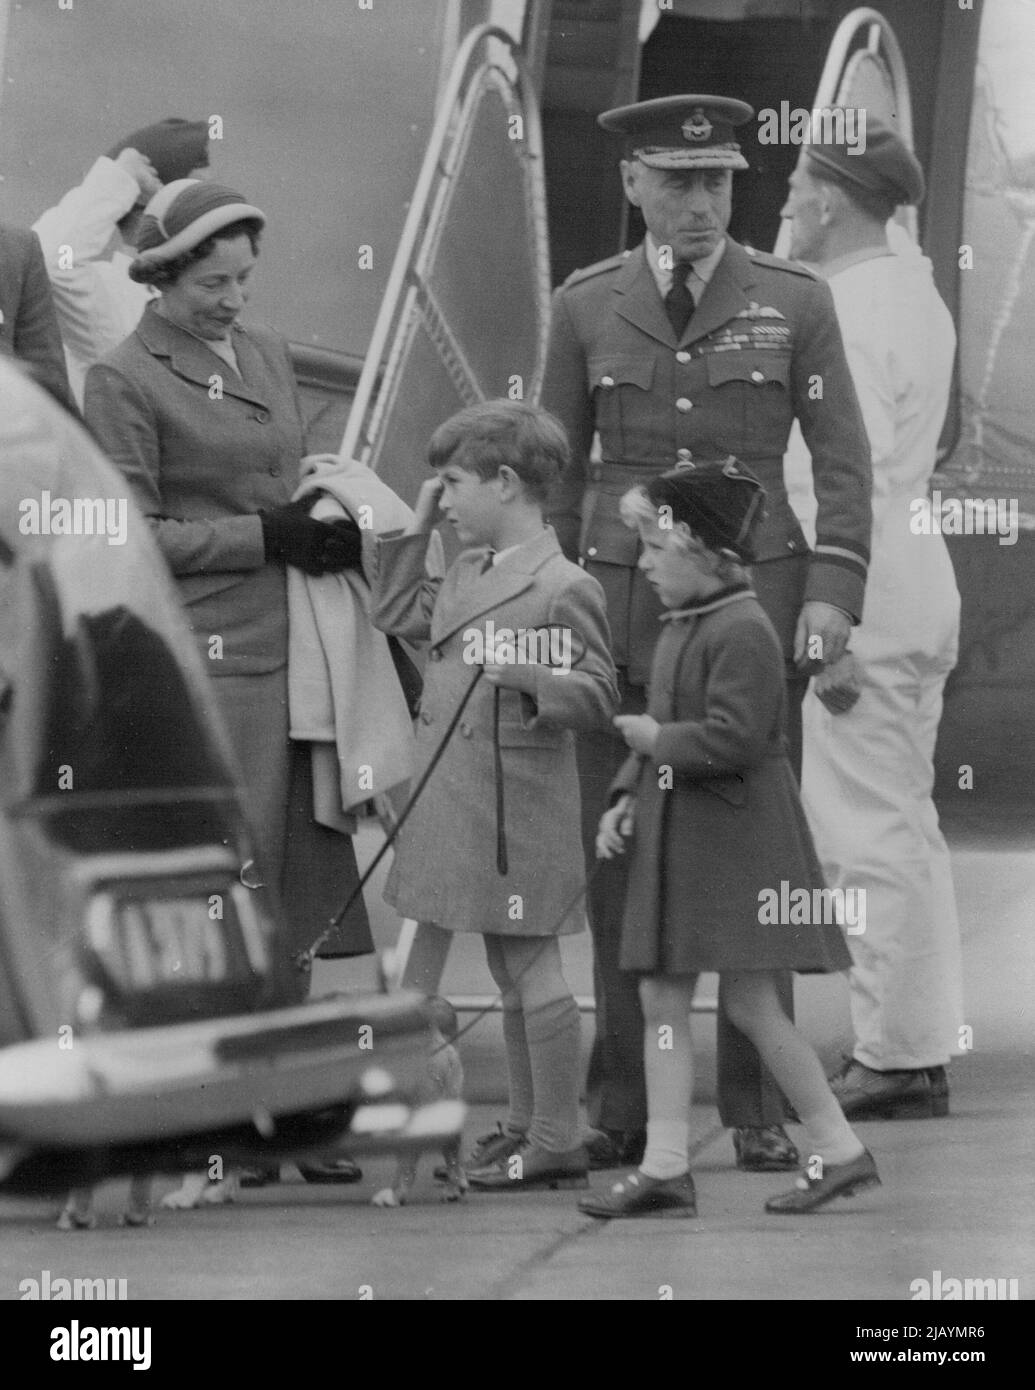 Royal Children Retour à Londres -- de retour à Londres de leur séjour à Balmoral sont Prince Charles et la princesse Anne, tenant un corgi d'animal de compagnie sur une ligne chacun à leur arrivée à l'aéroport de Londres de Aberdeen cet après-midi (jeudi). Le vol, le premier des enfants royaux, a été retardé à partir de dimanche - quand la Reine est revenue - parce que la princesse Anne avait une infection d'oreille. 09 juin 1955. Banque D'Images